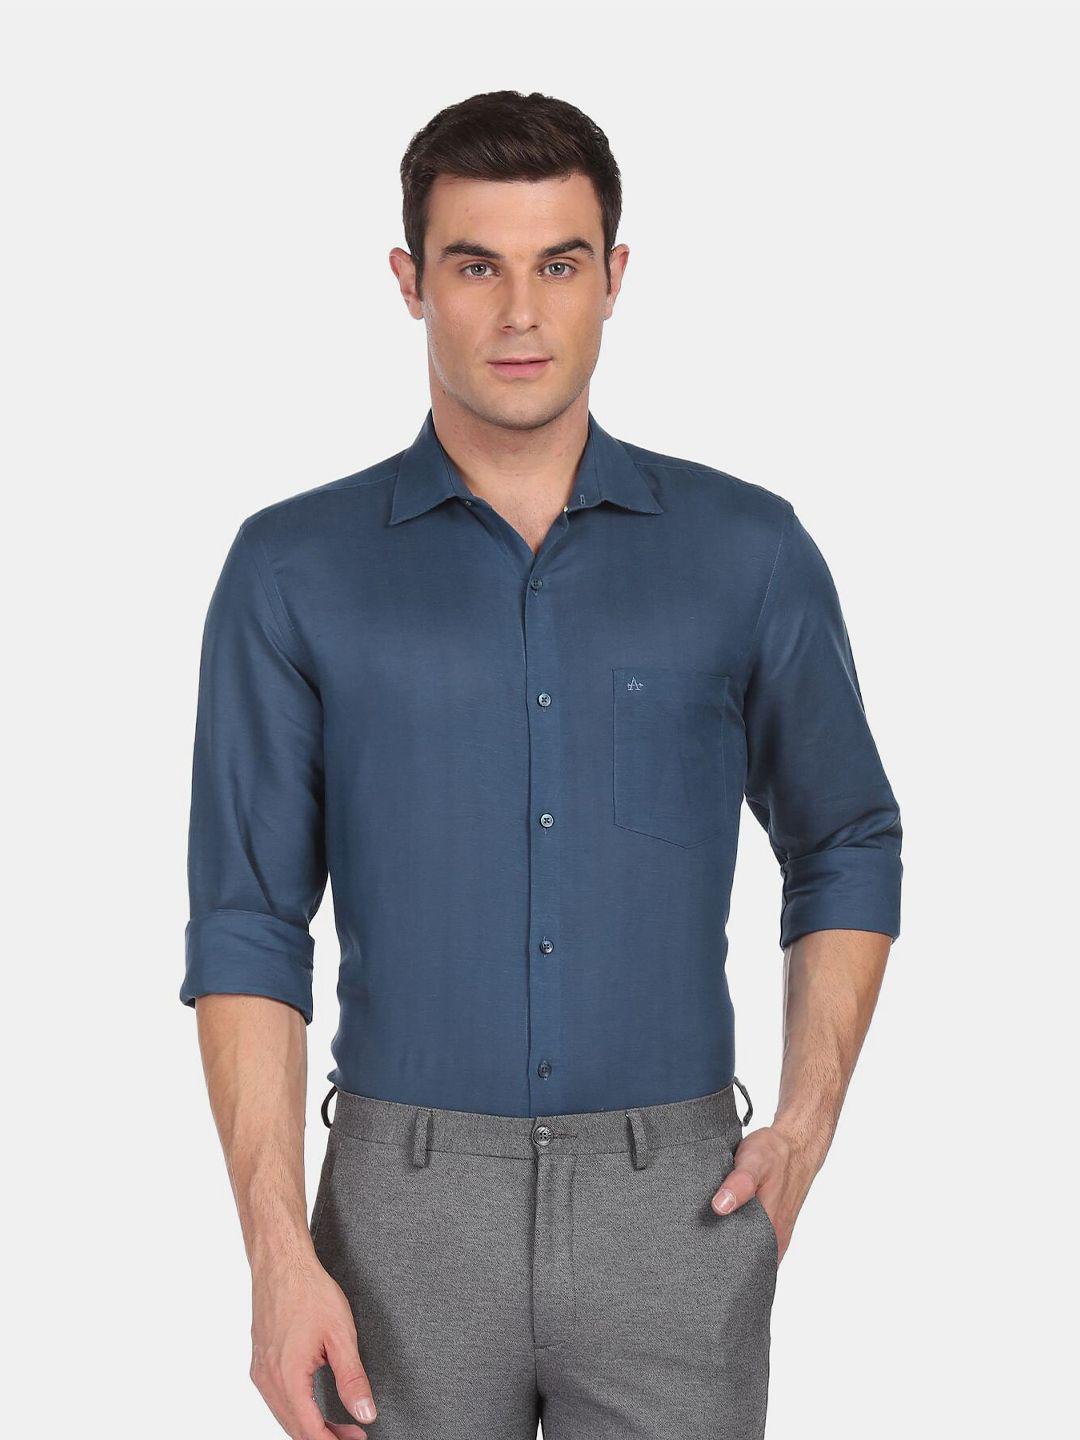 arrow men blue solid regular fit formal shirt